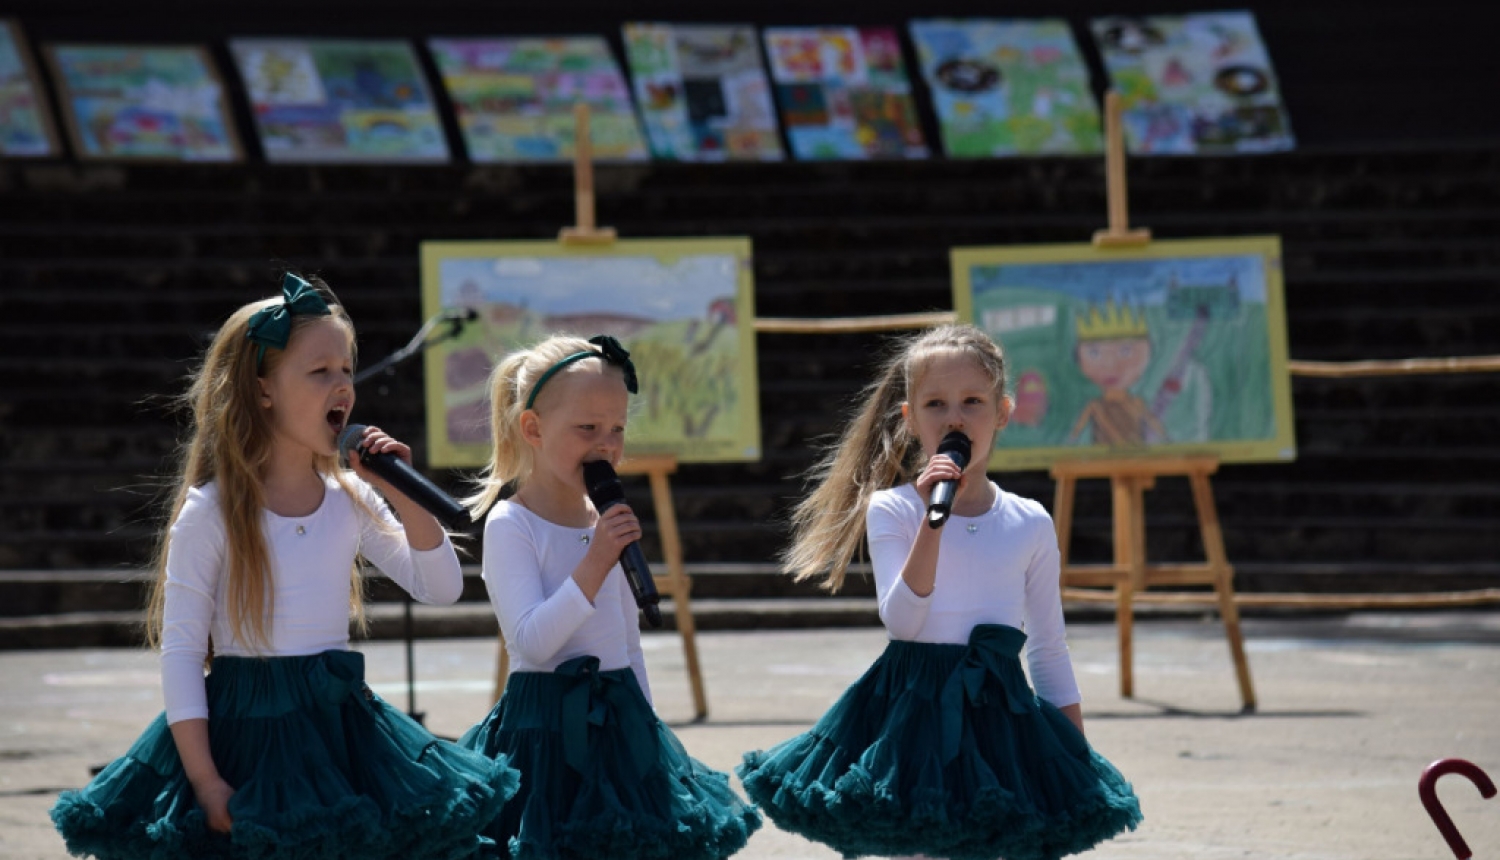 Aizvadīts Ludzas novada mākslu festivāls “Šeku reku''